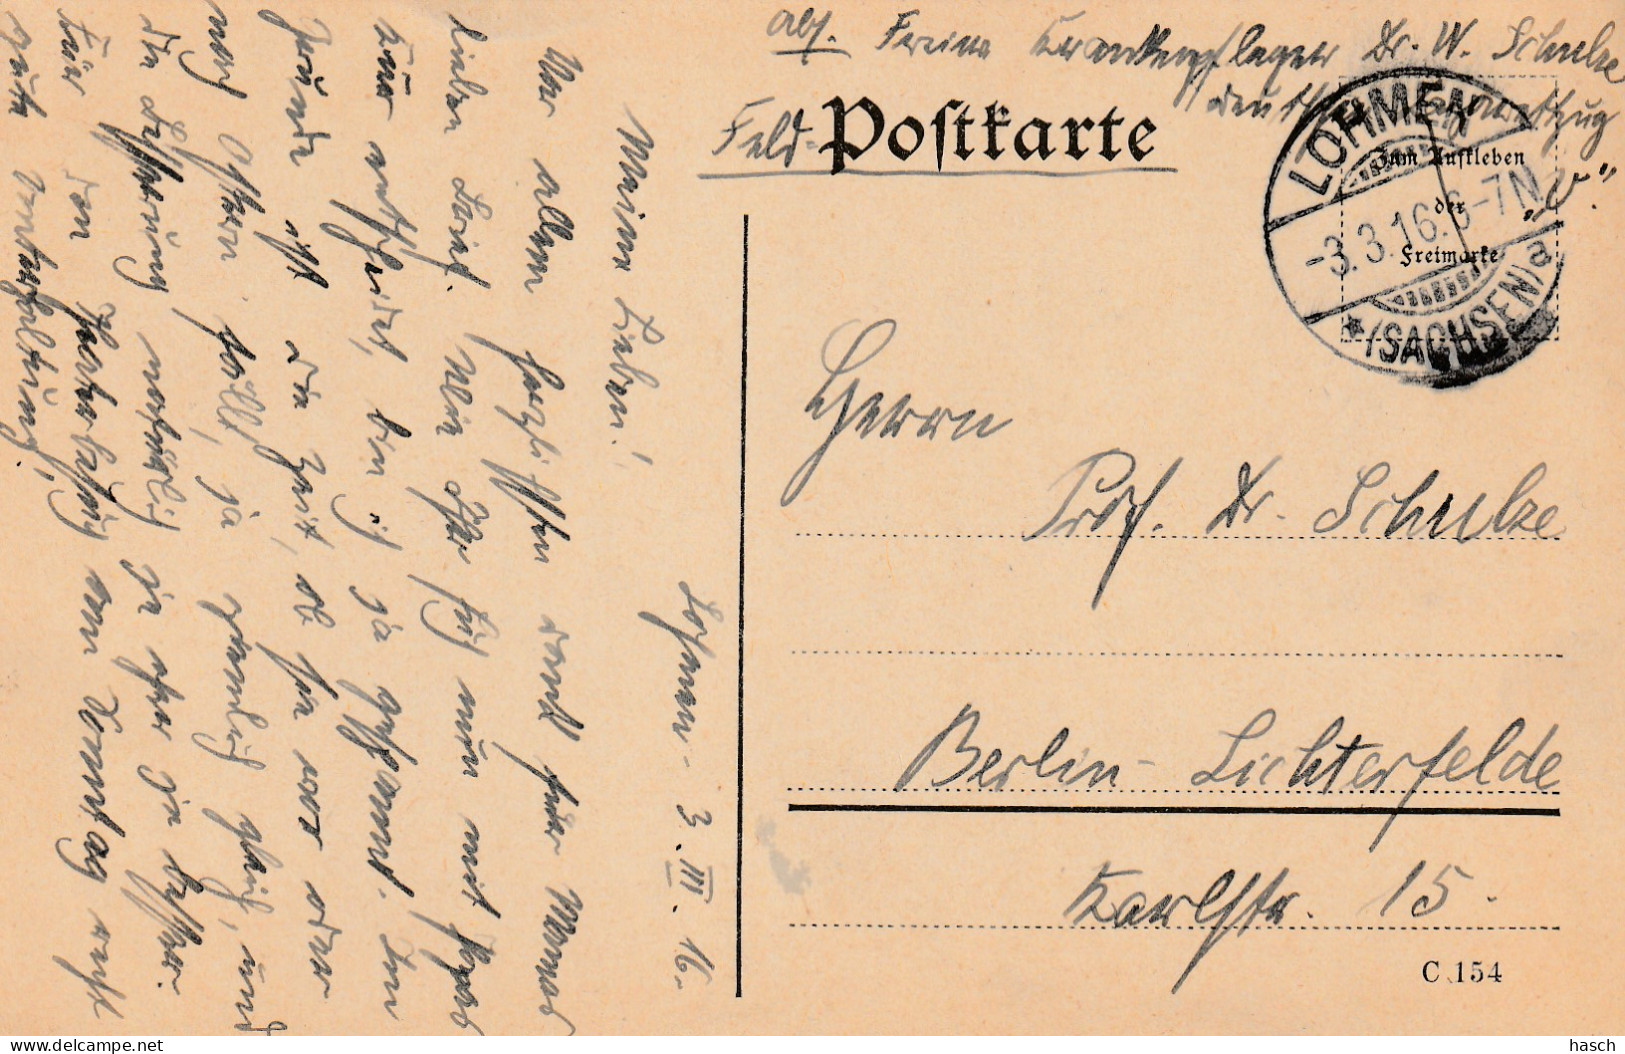 4935 32 Feldpostkarte 03-03-1916 Lohmen (sachsen)- Berlin. Absender Dr Schulze, Krankenpfleger Deutsche Lazarettzug Vau. - Weltkrieg 1914-18